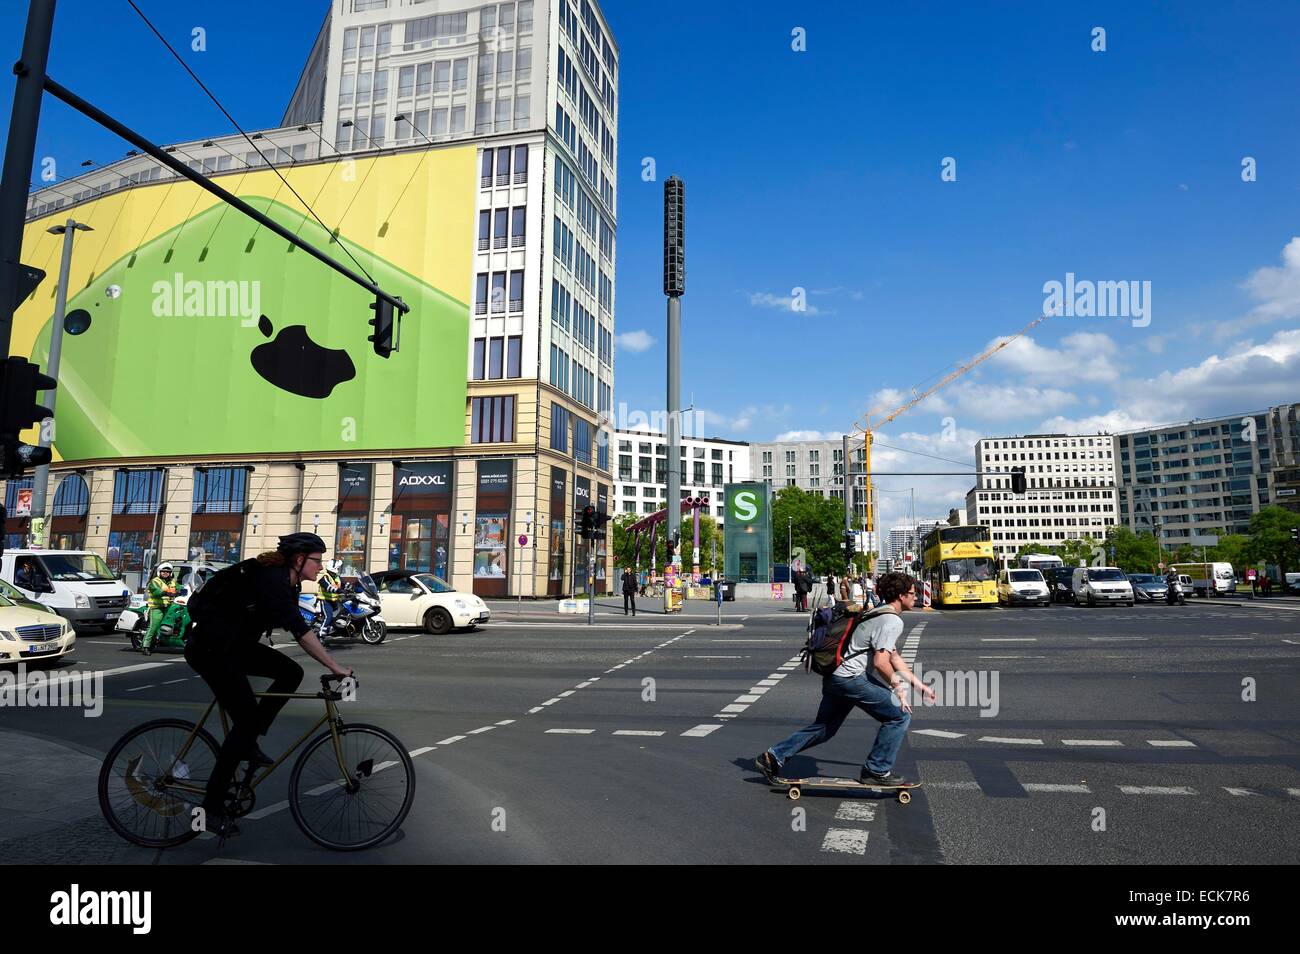 Germania, Berlino, Potsdamer Platz, falsa facciata di un edificio interamente composto di dipinto di telone per l'architettura e il tabellone per le affissioni Foto Stock